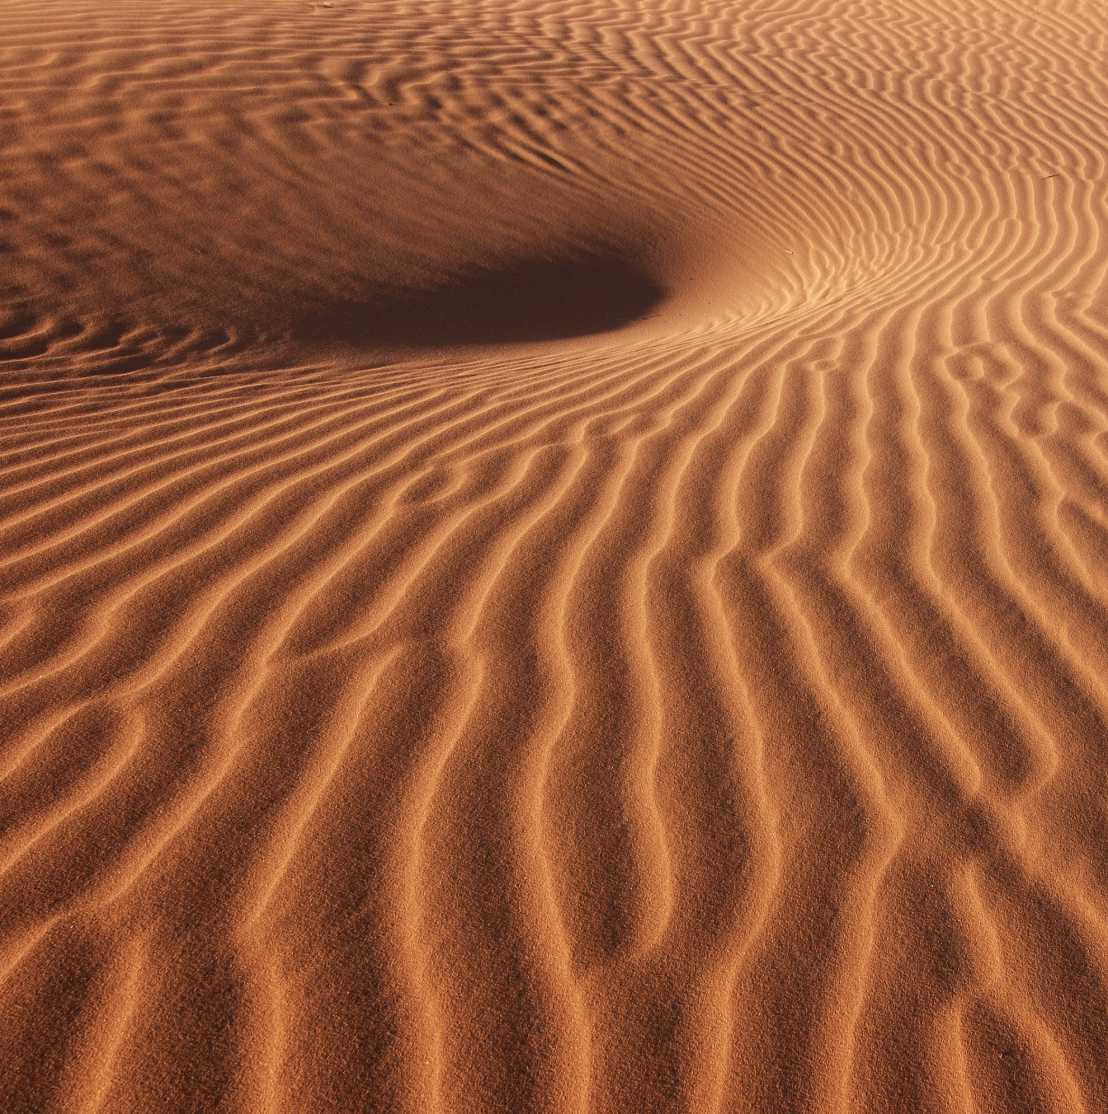 Enlarged view: Wüstensand